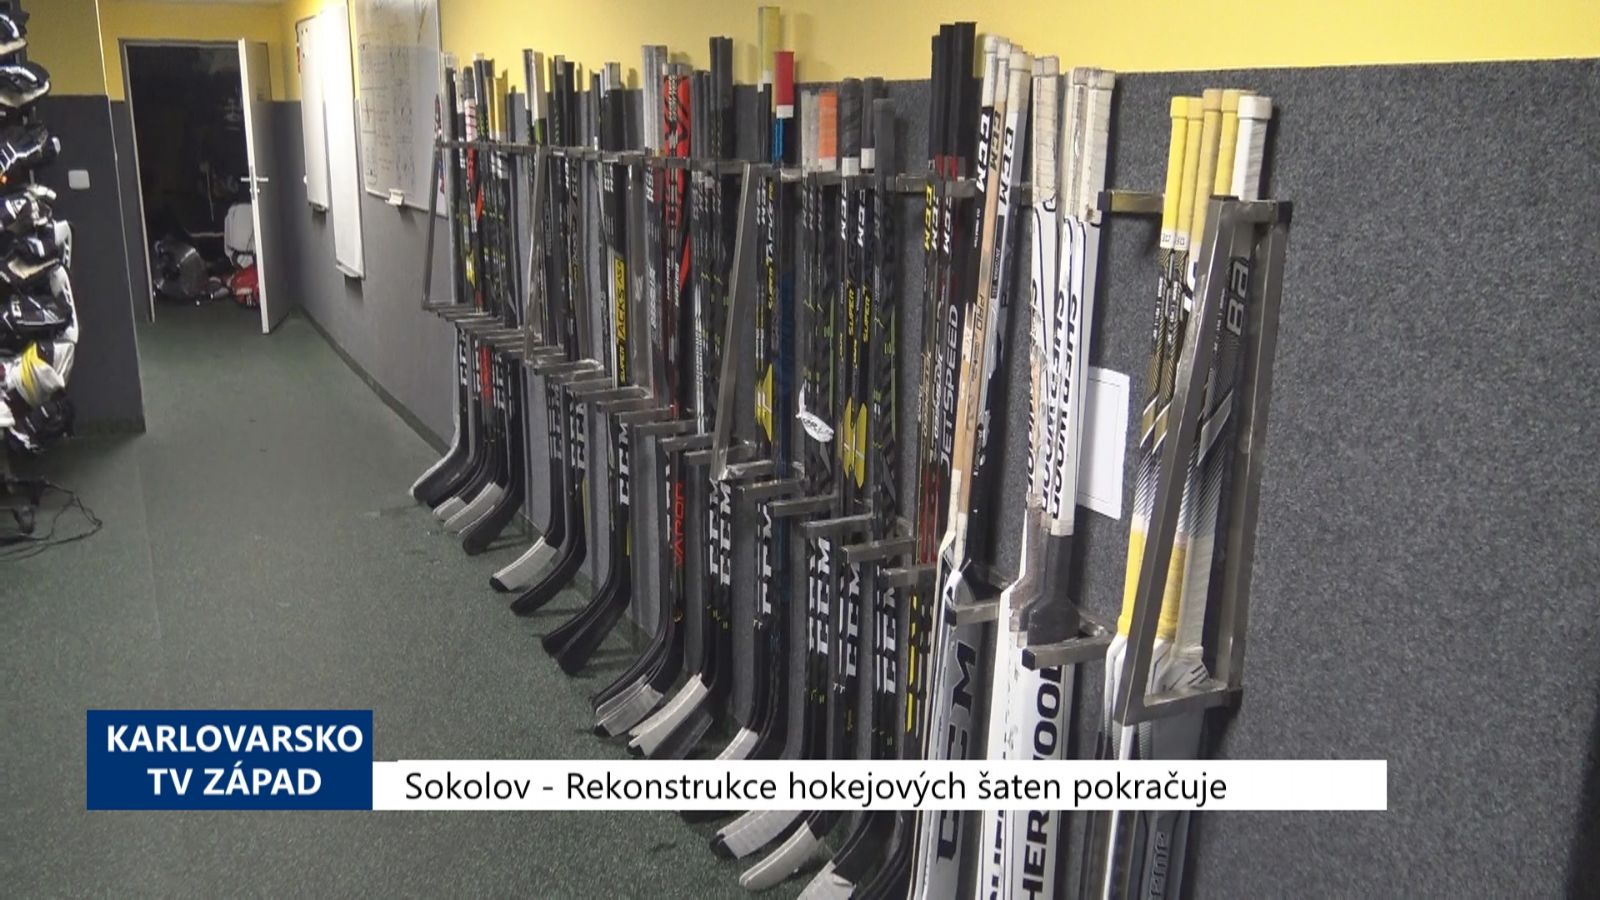 Sokolov: Rekonstrukce hokejových šaten pokračuje (TV Západ)